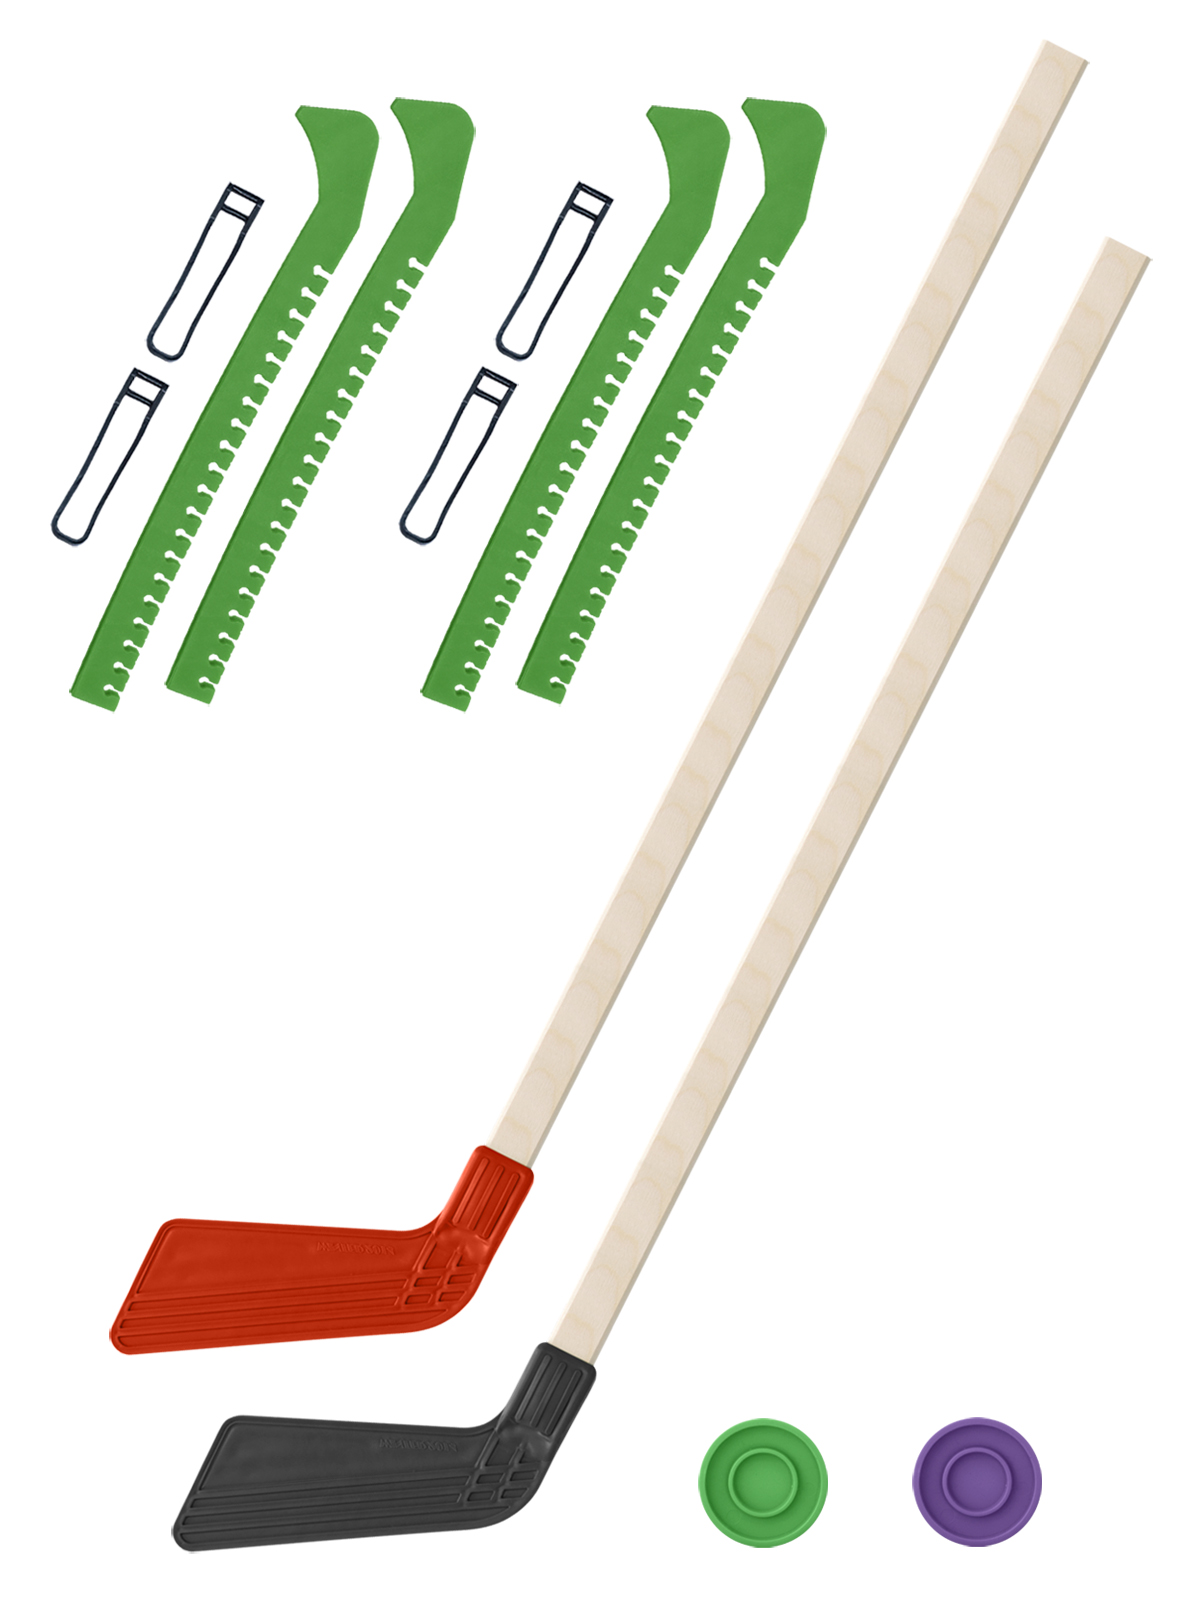 Хоккейный набор Задира-плюс клюшка детская(крас+чер)2шт+2 шайбы+чехлы для коньков зел 2шт